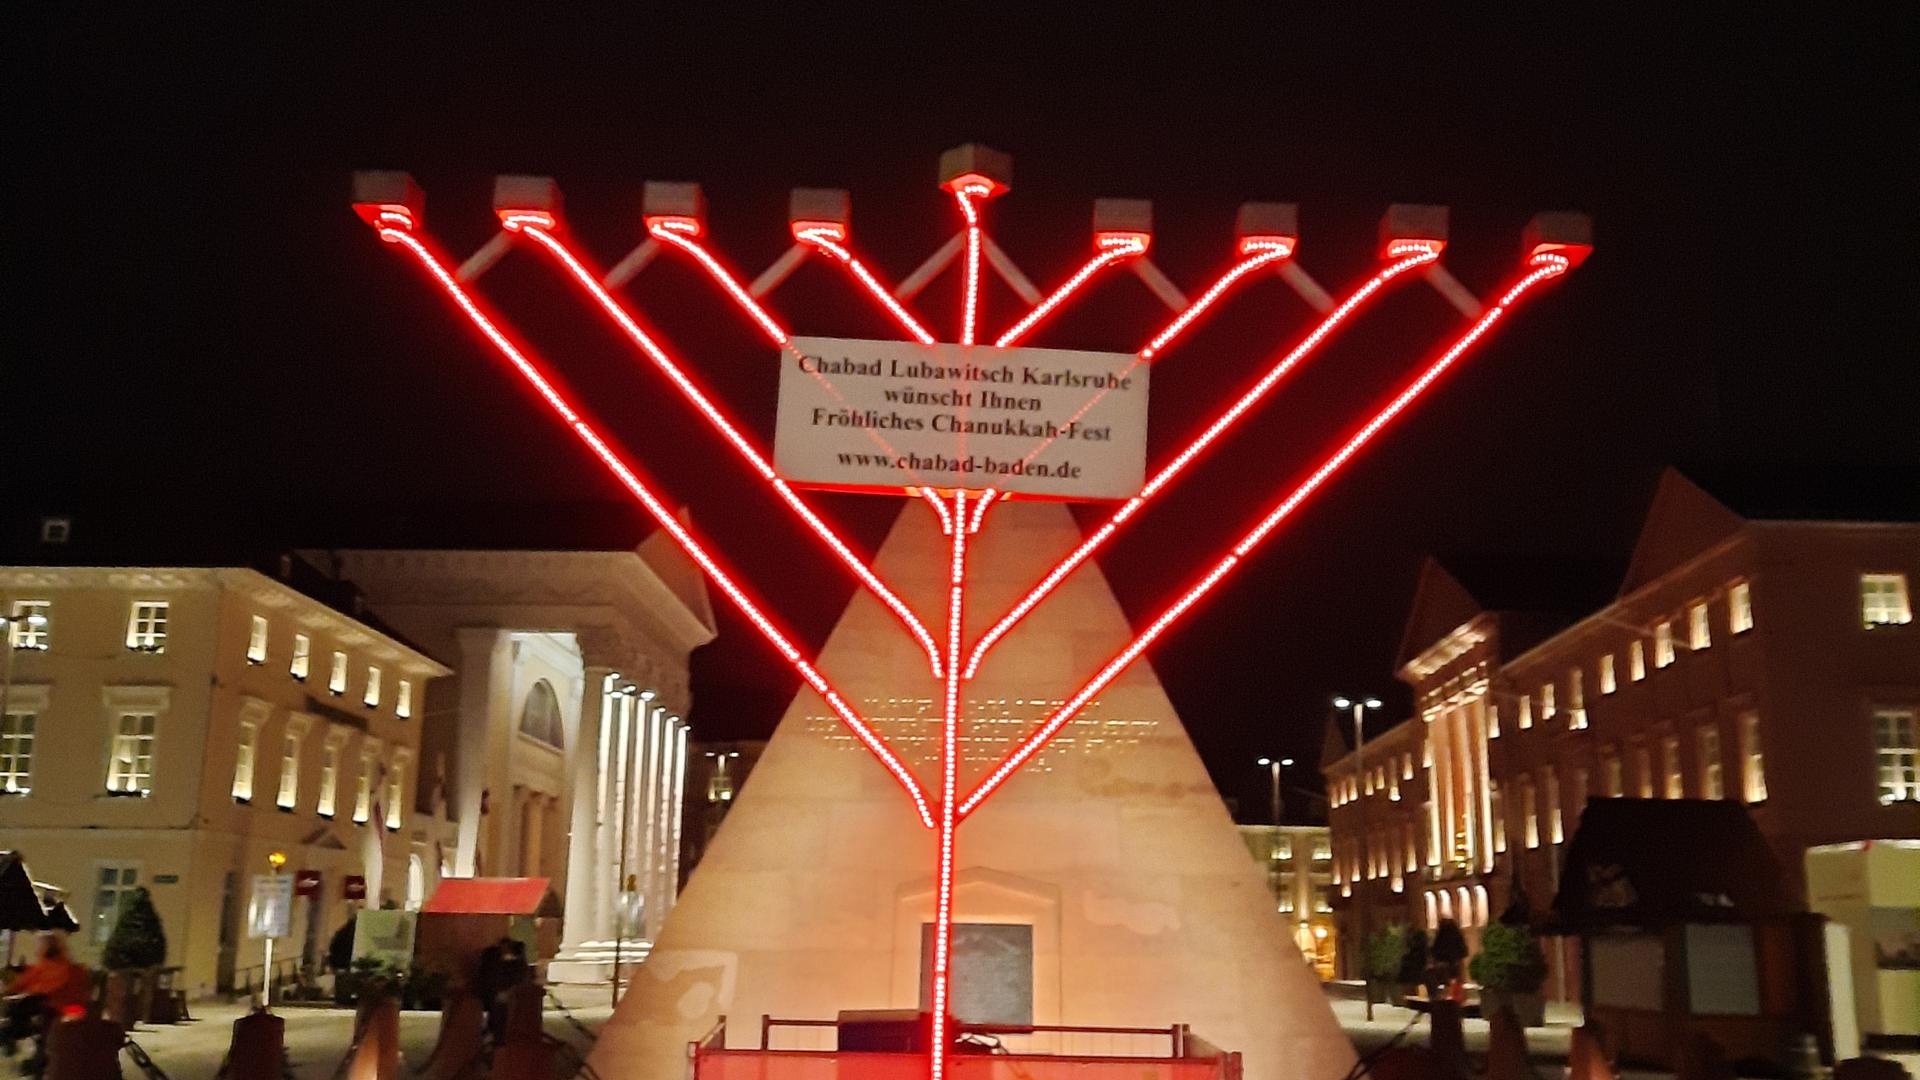 Blickfang am Marktplatz: Die jüdische Gruppierung Chabad hat am Marktplatz einen Leuchter für das Chanukka-Fest aufgestellt.